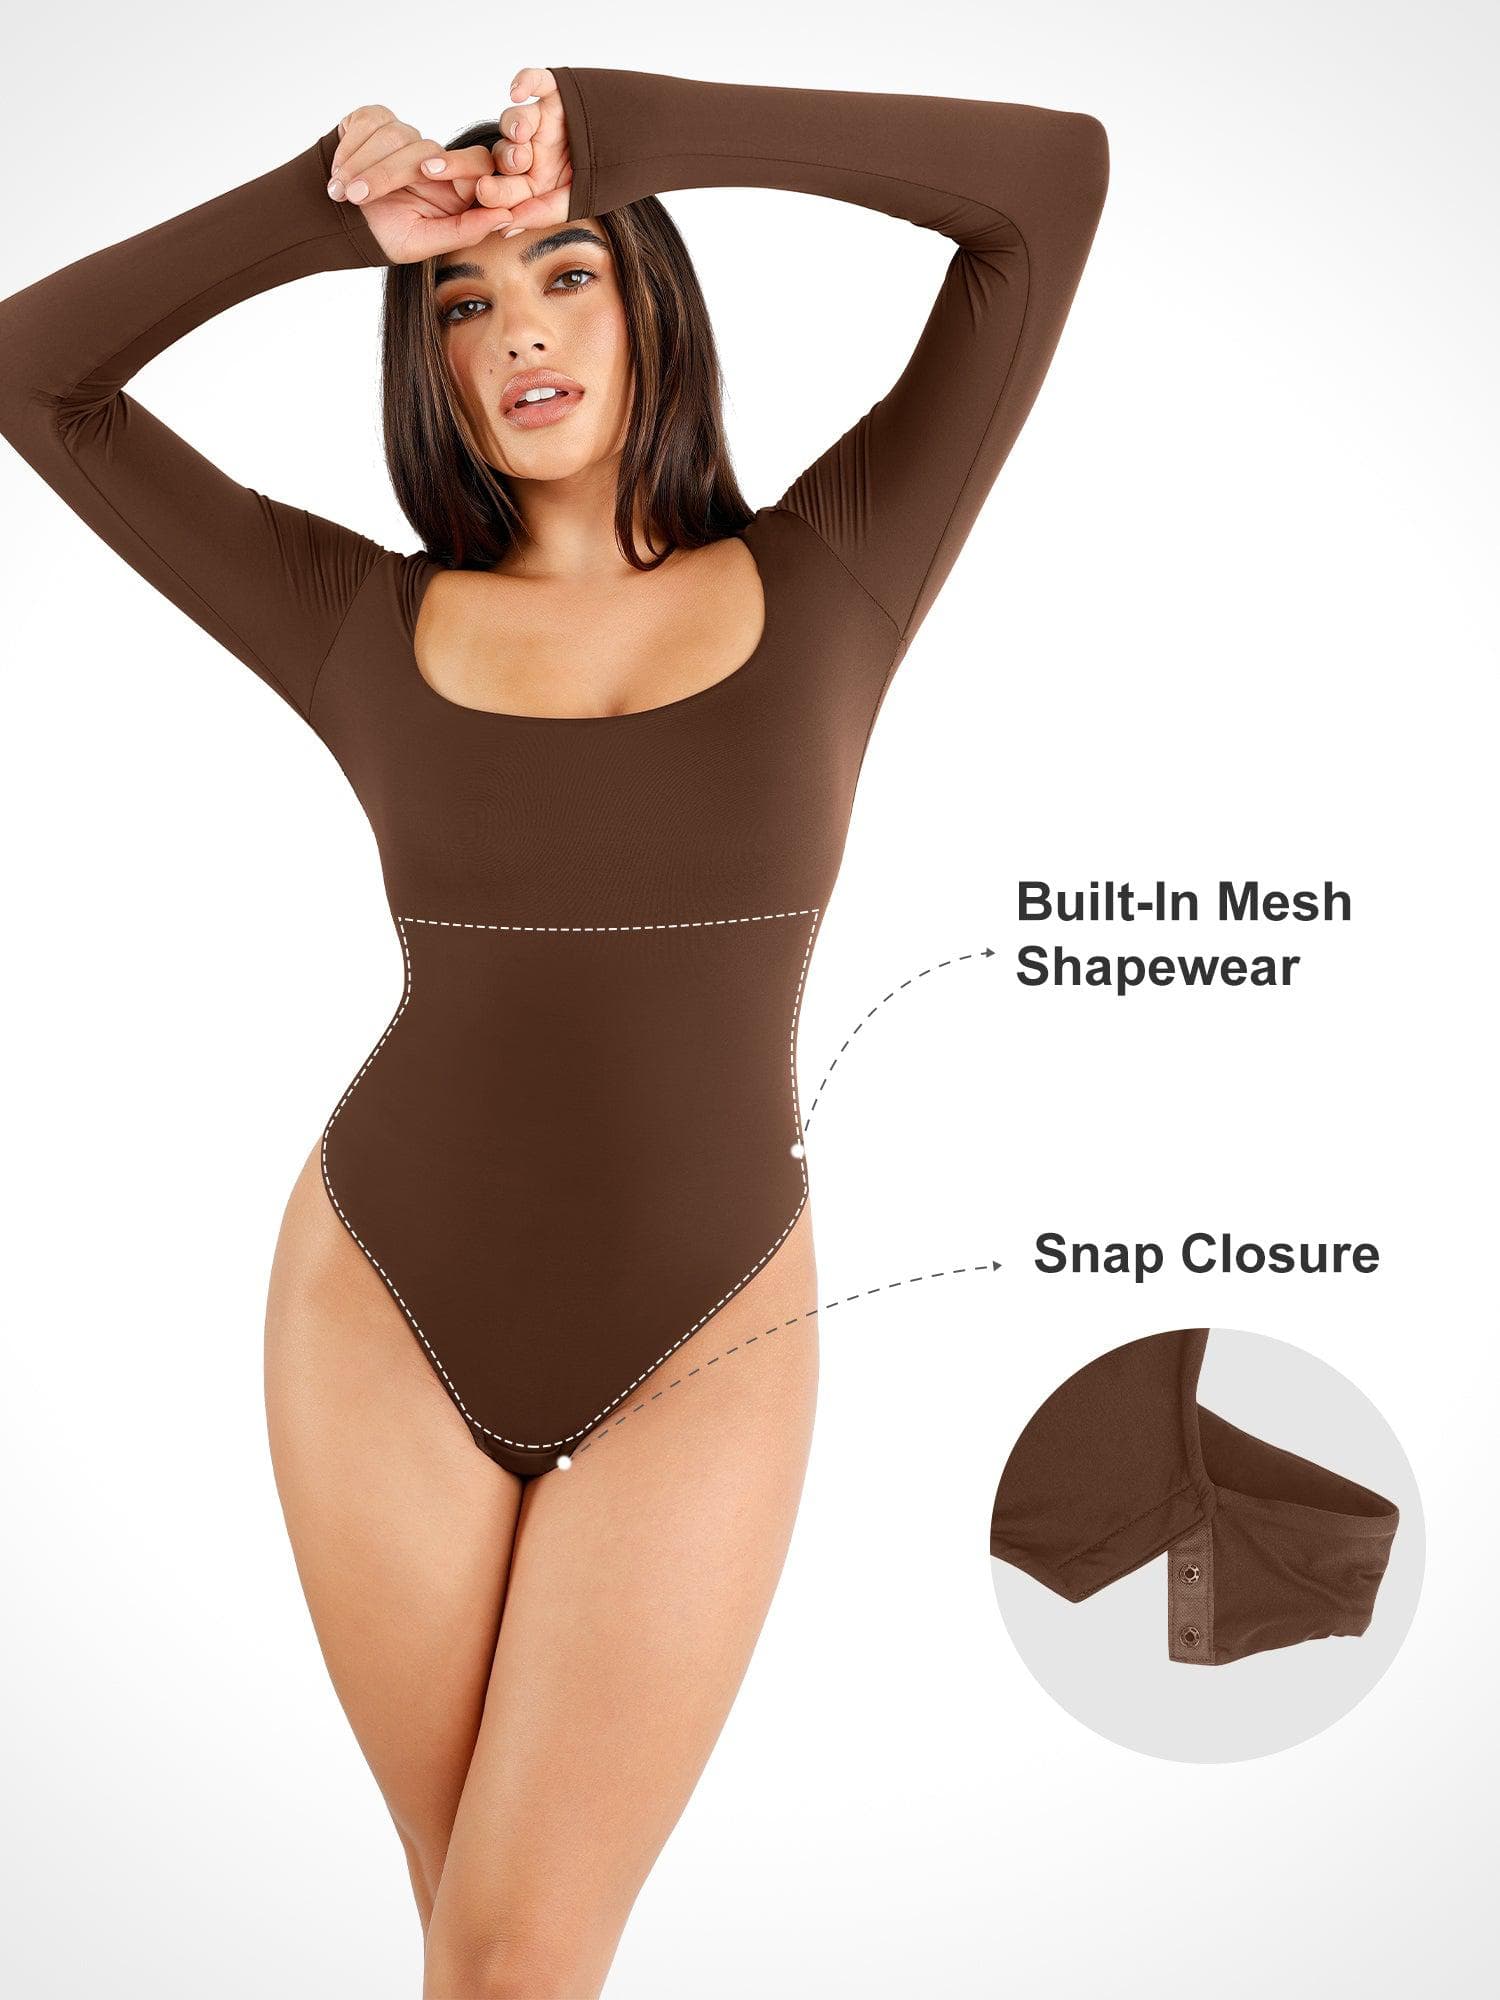 NEW Long Sleeve Bodysuit Shapewear For Women Seamless Tummy